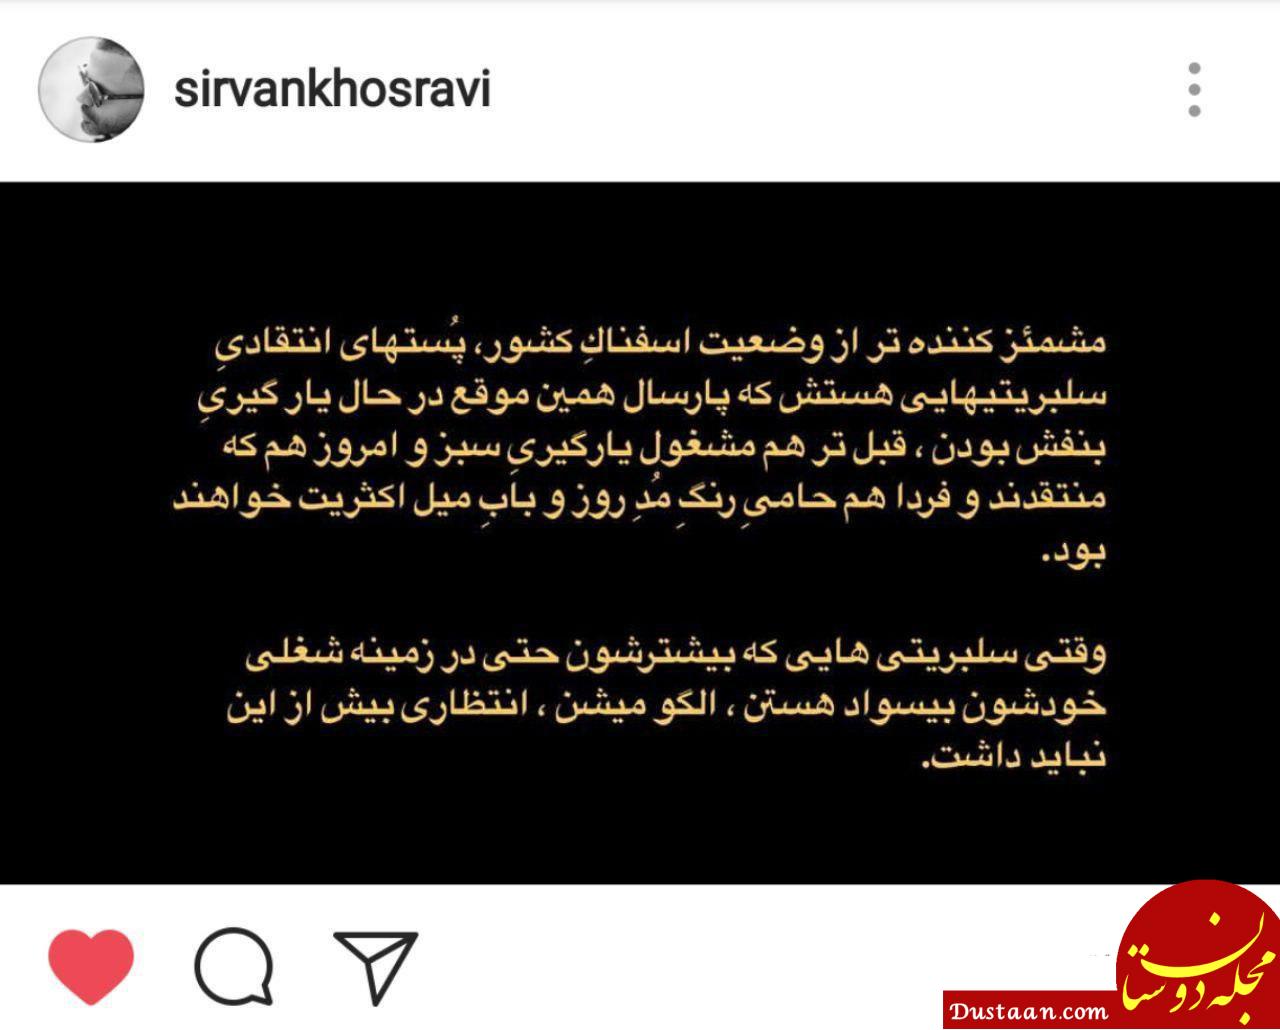 www.dustaan.com پست جالب سیروان خسروی از رنگ باختن هر روز سلبریتی  ها!